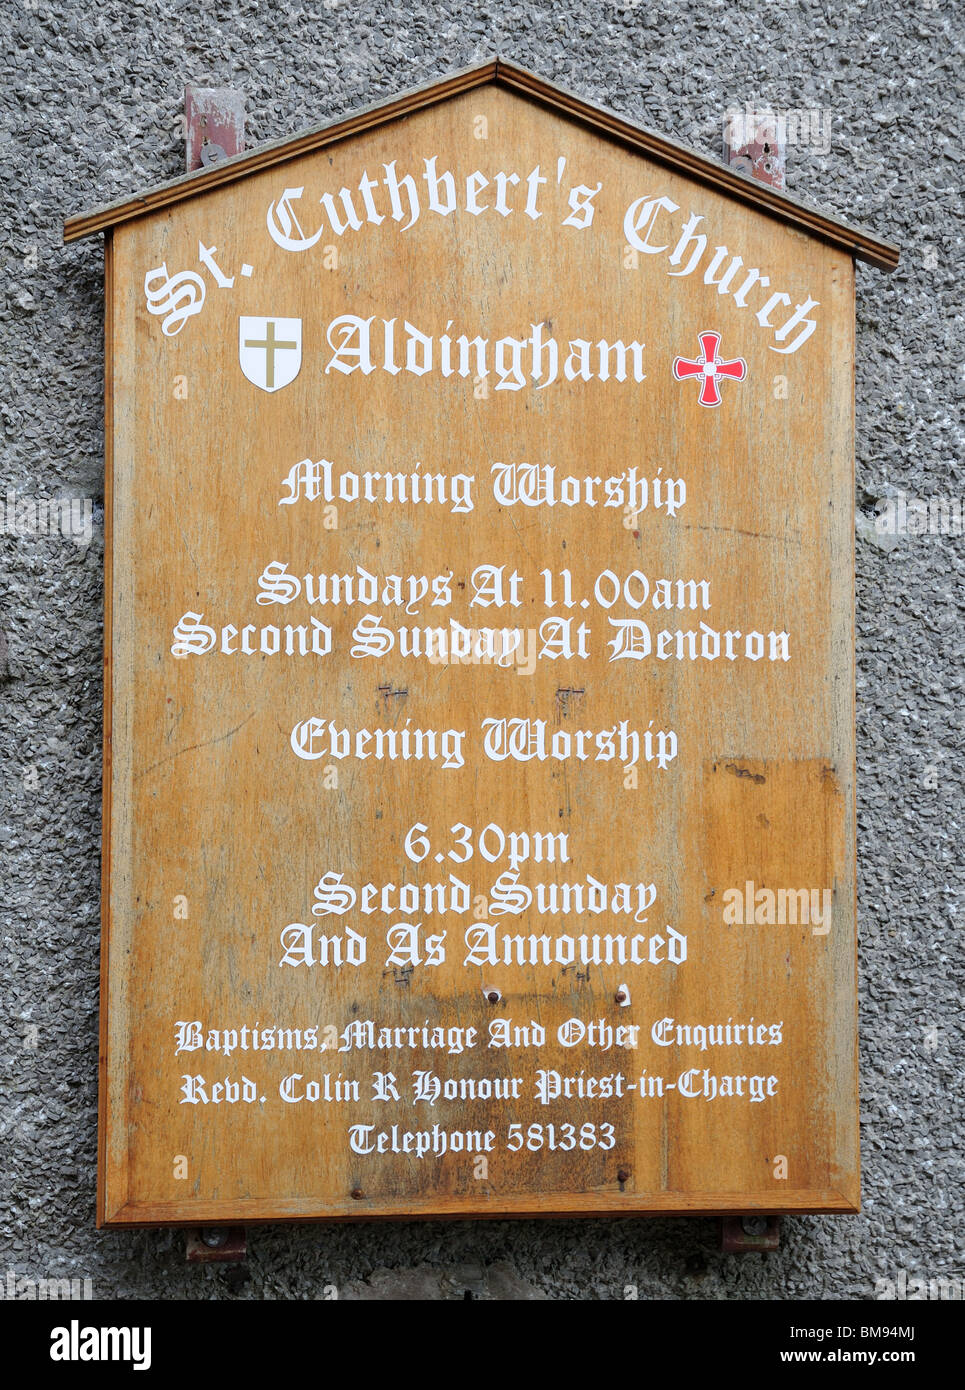 Schwarzes Brett außerhalb St. Cuthbert Kirche Aldingham Cumbria mit Details über Leistungen und Anbetung Stockfoto